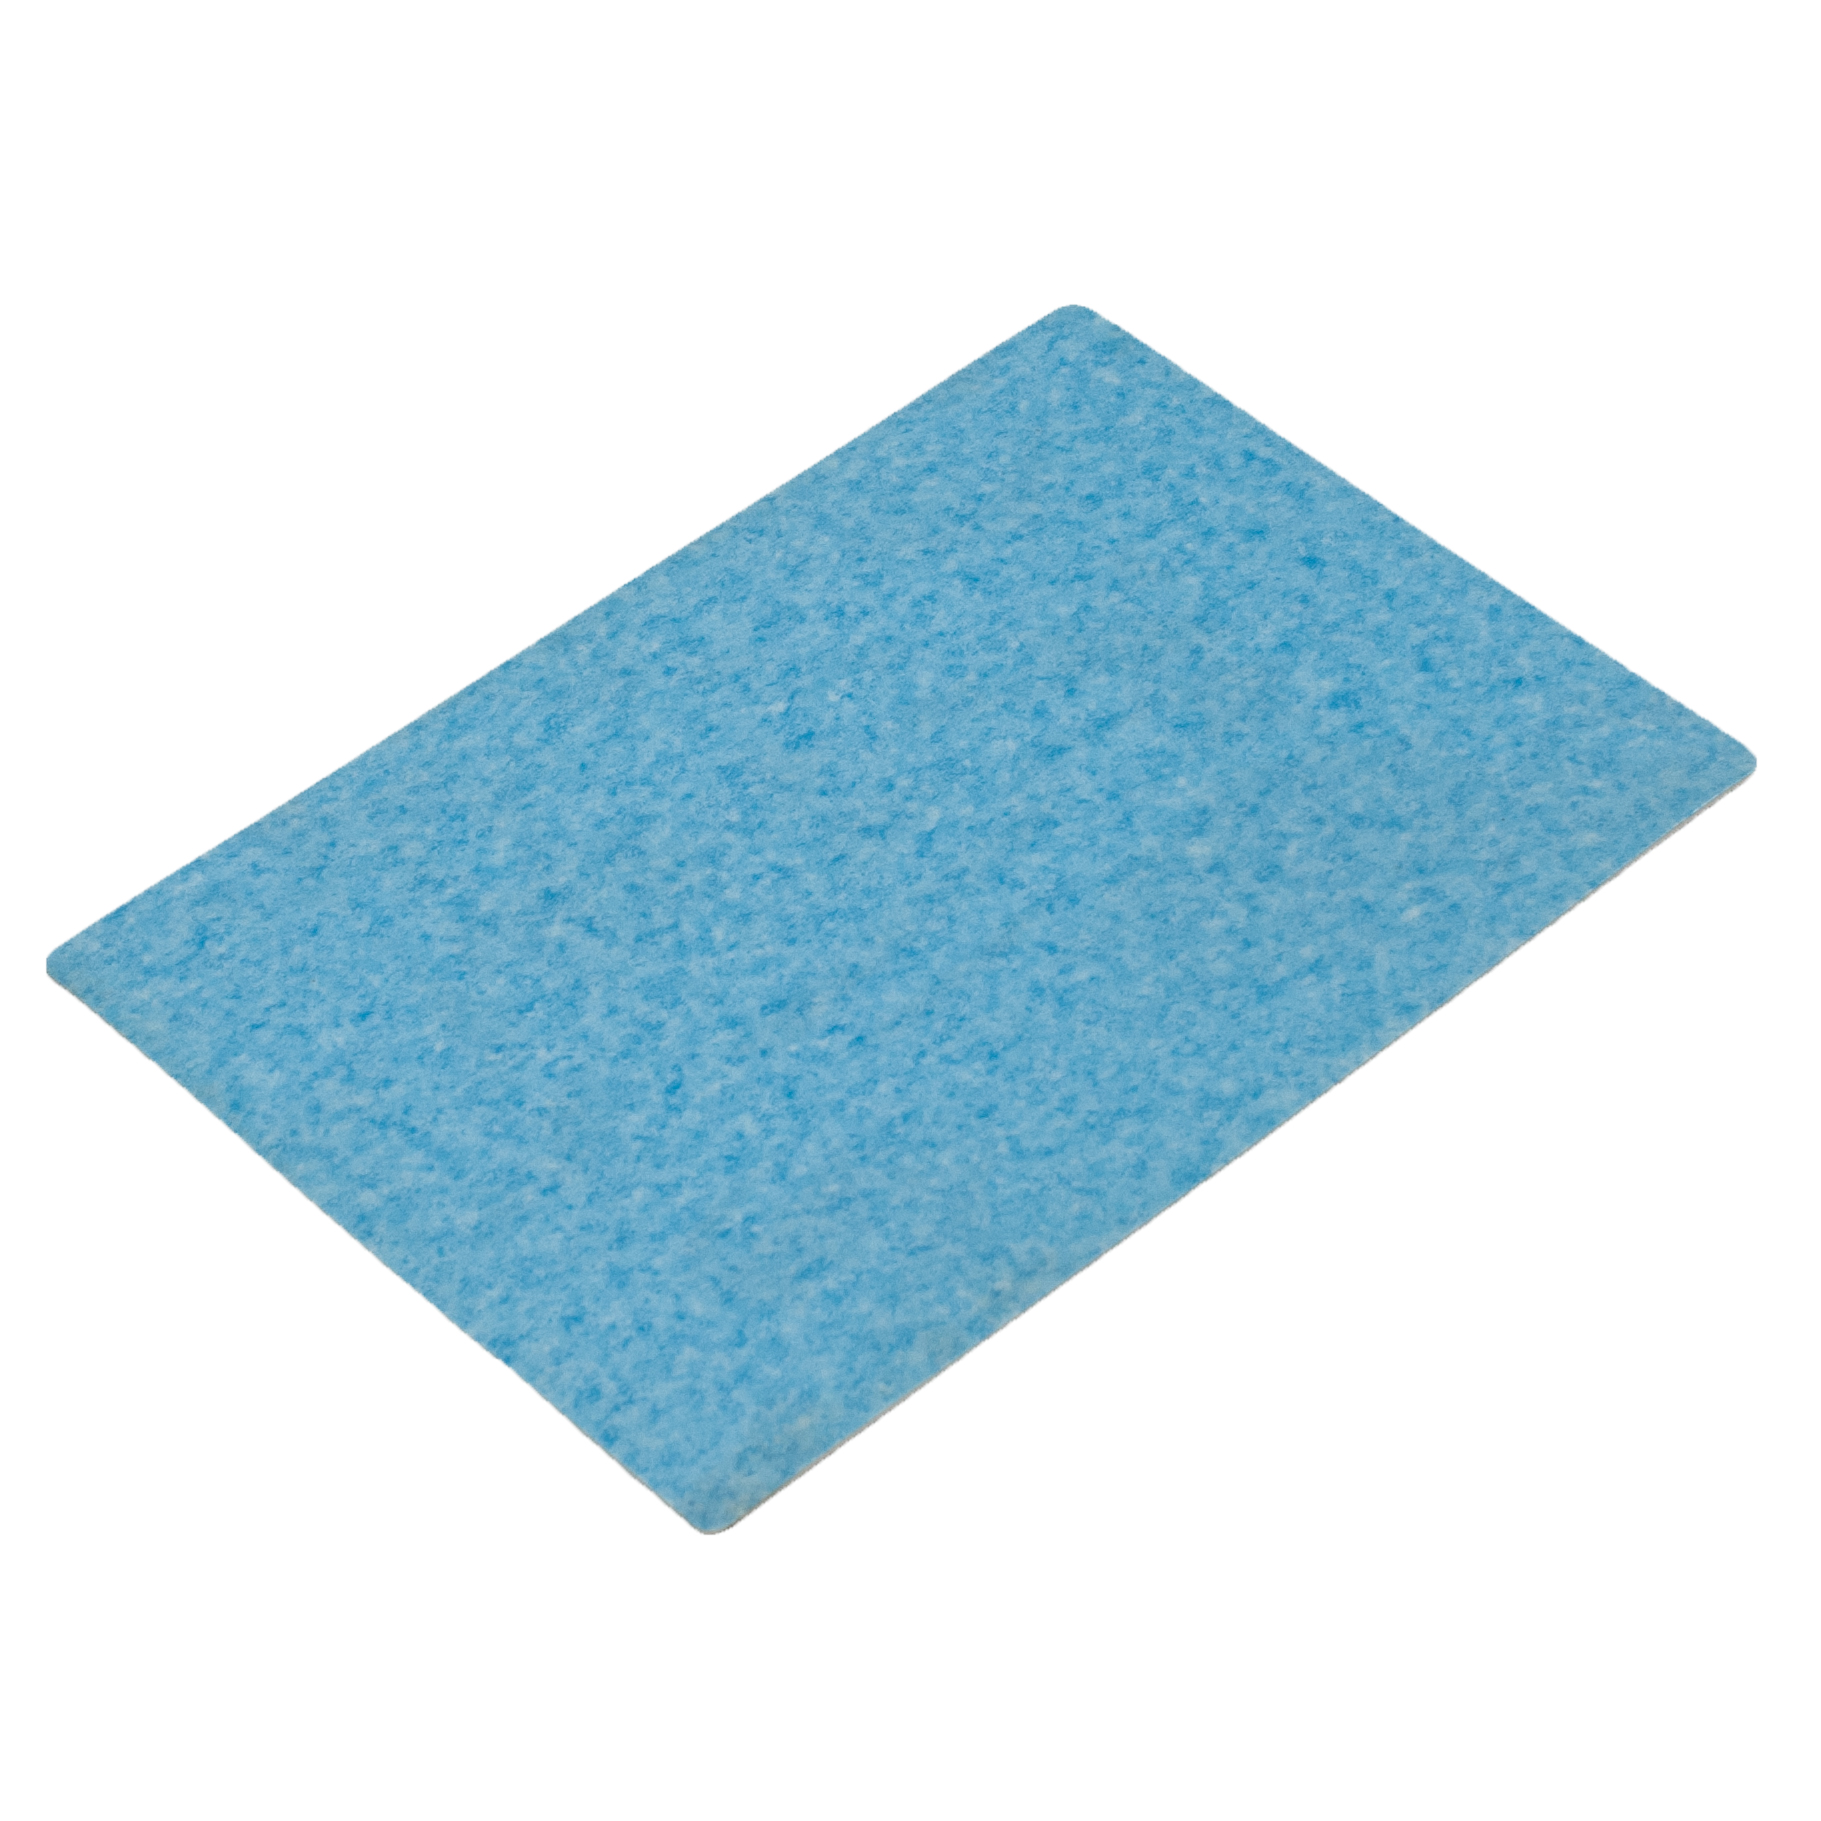 Industrial PVC Flooring For Basement Tiles